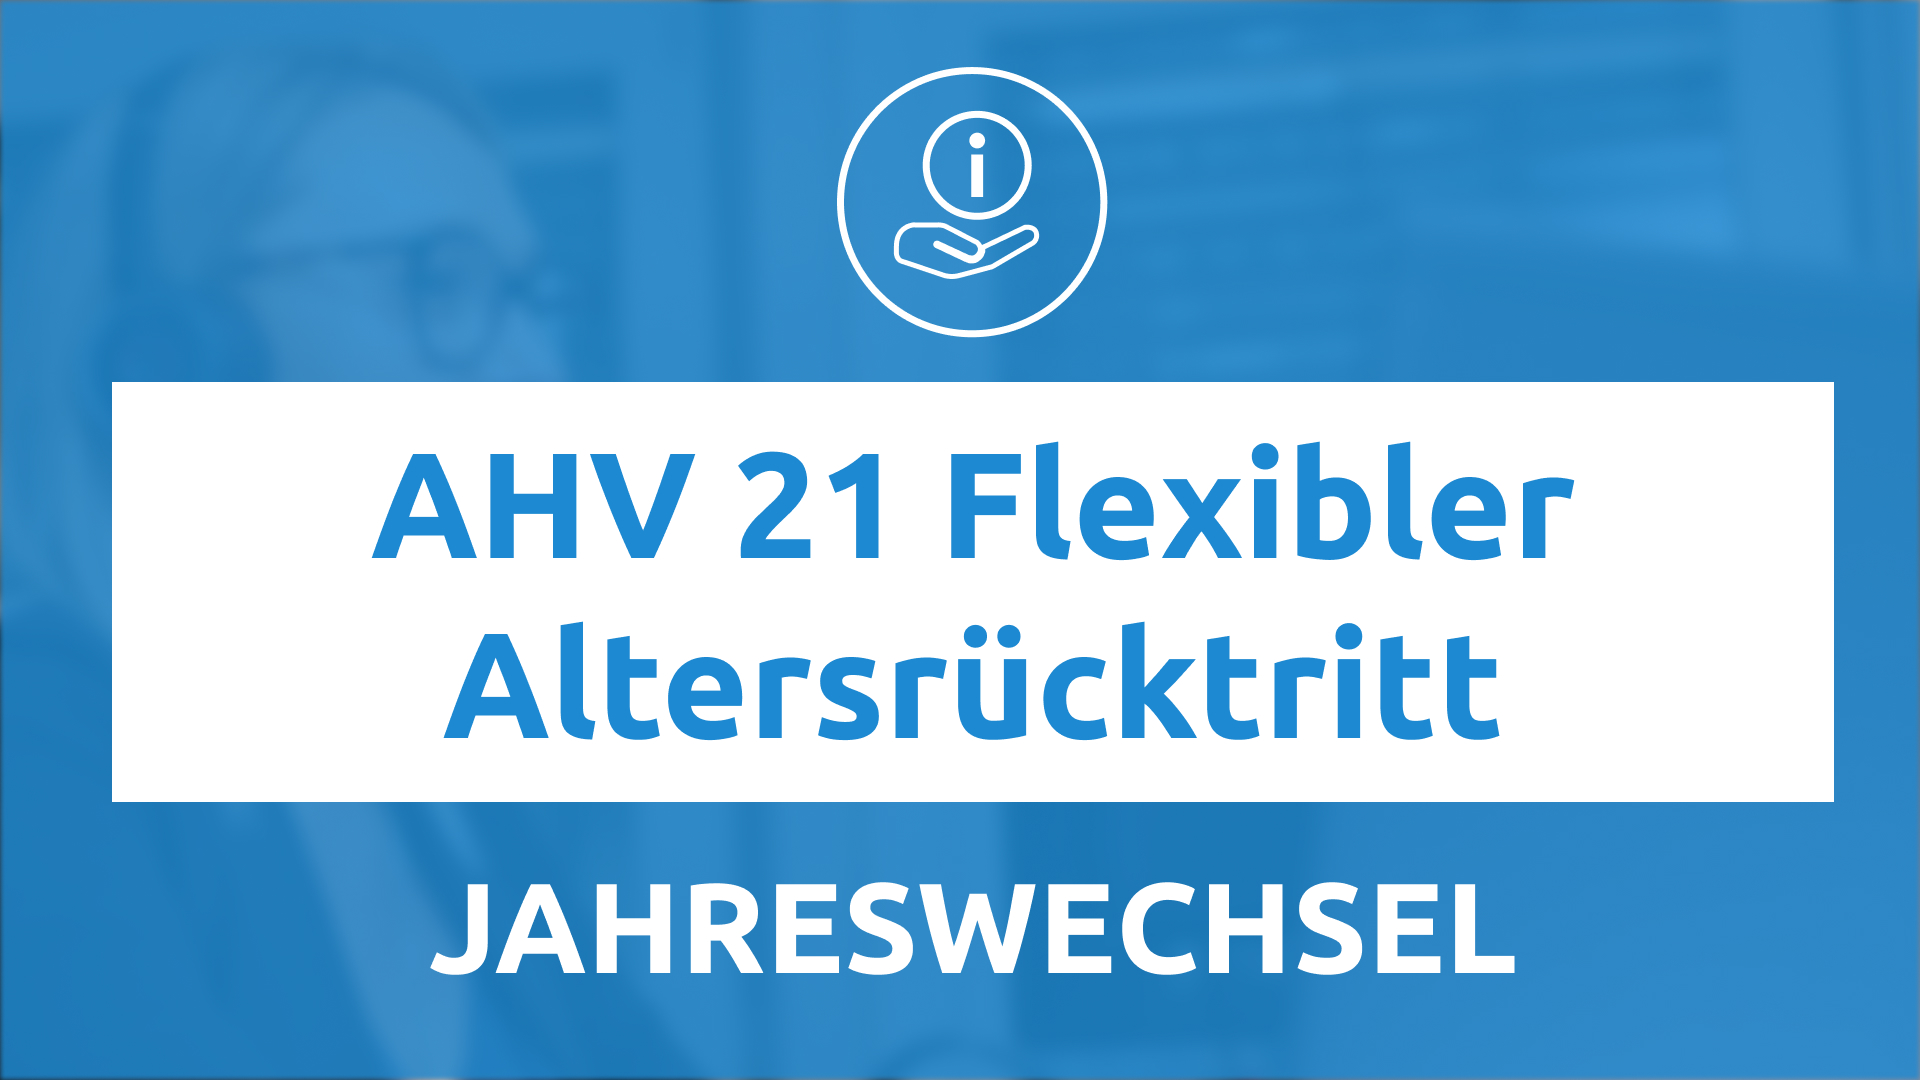 AHV 21 Flexibler Altersrücktritt